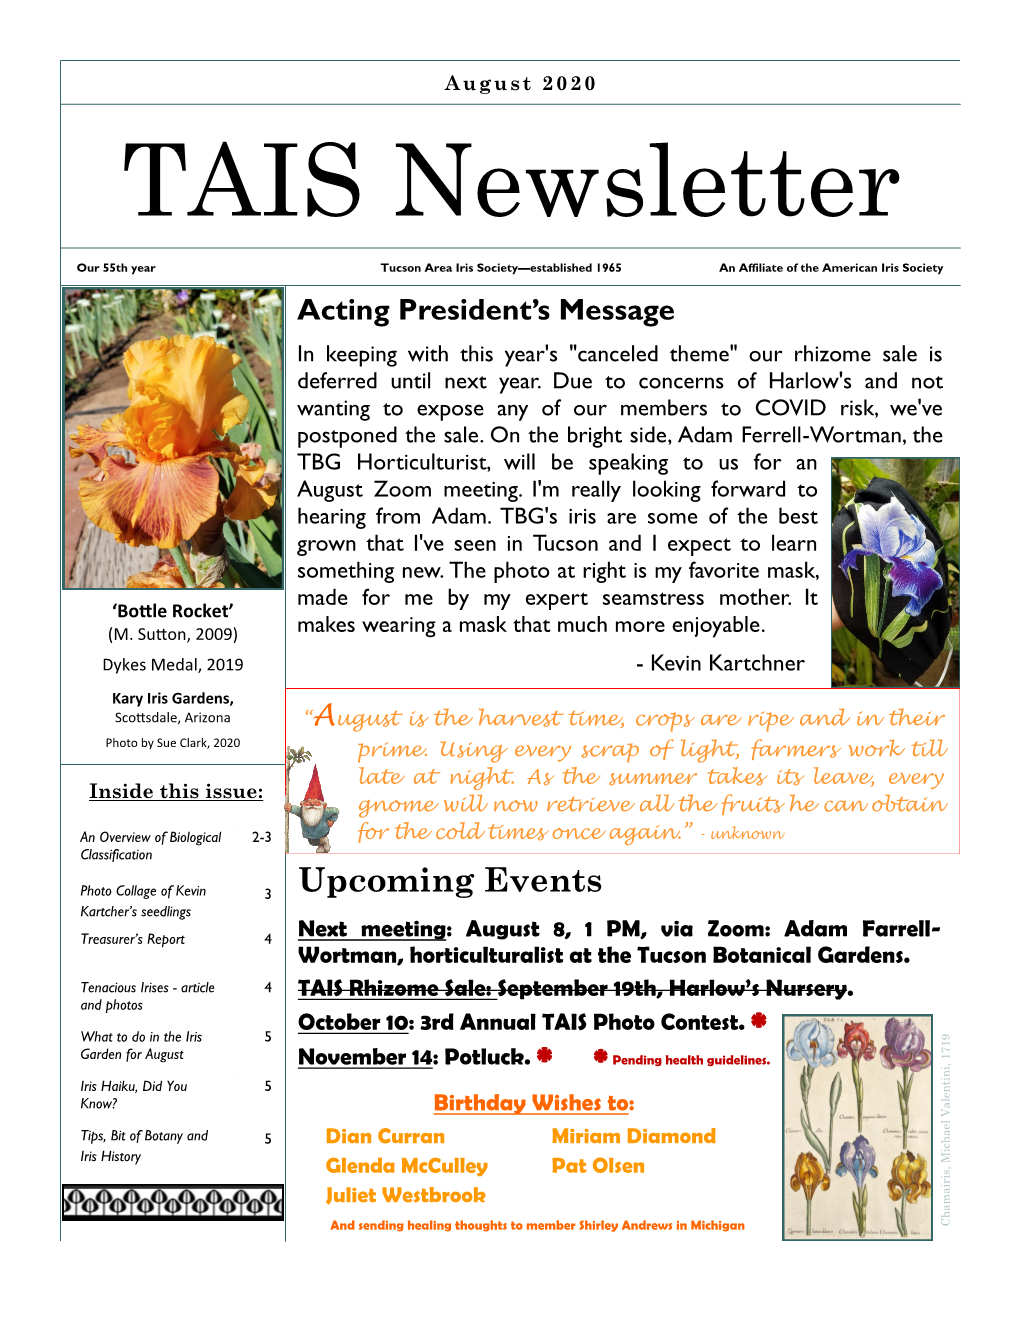 TAIS Newsletter